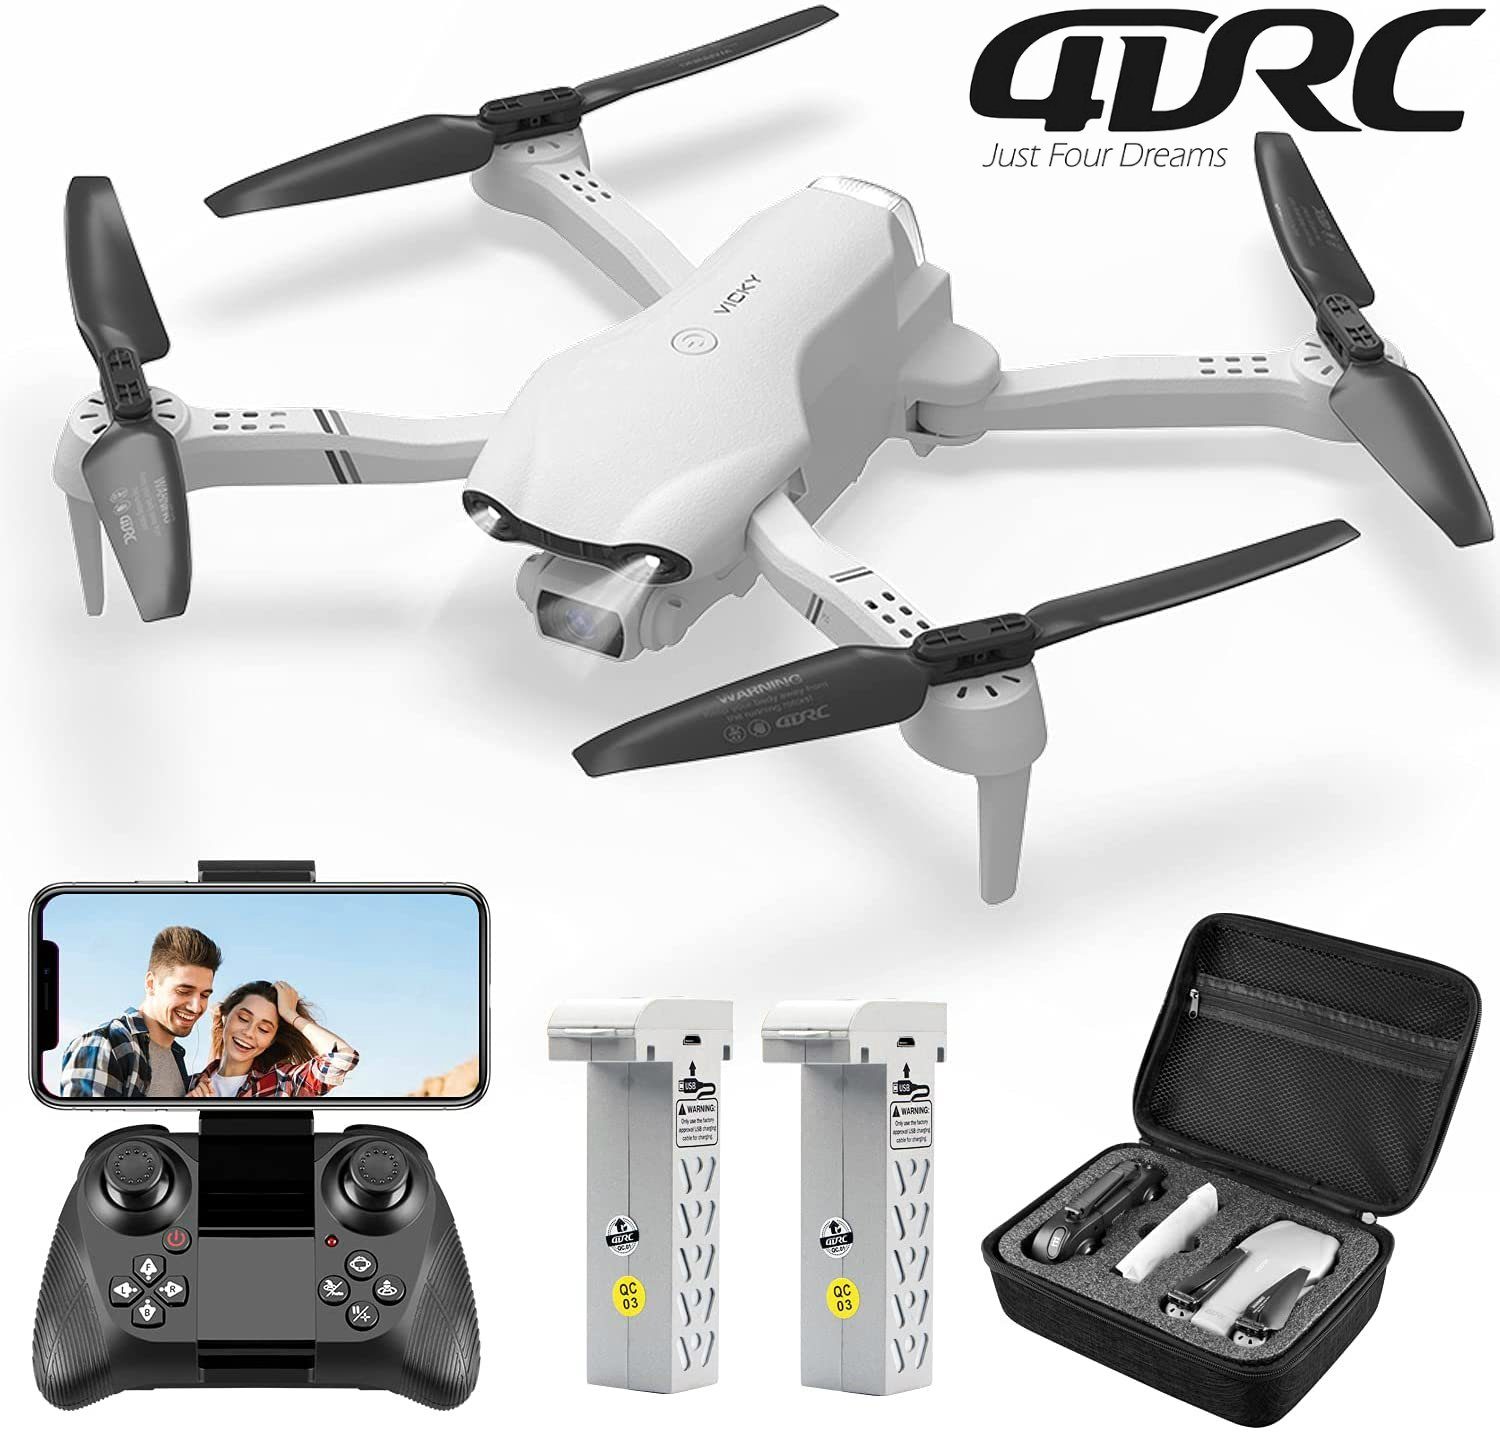 4DRC für Kinder & automatischer F10, HD, klappbarer Spielzeug-Drohne (1080P Anfänger, FPV-Live-Video, Minuten Weiß 32 Quadcopter Schwebeflug) Flugzeit